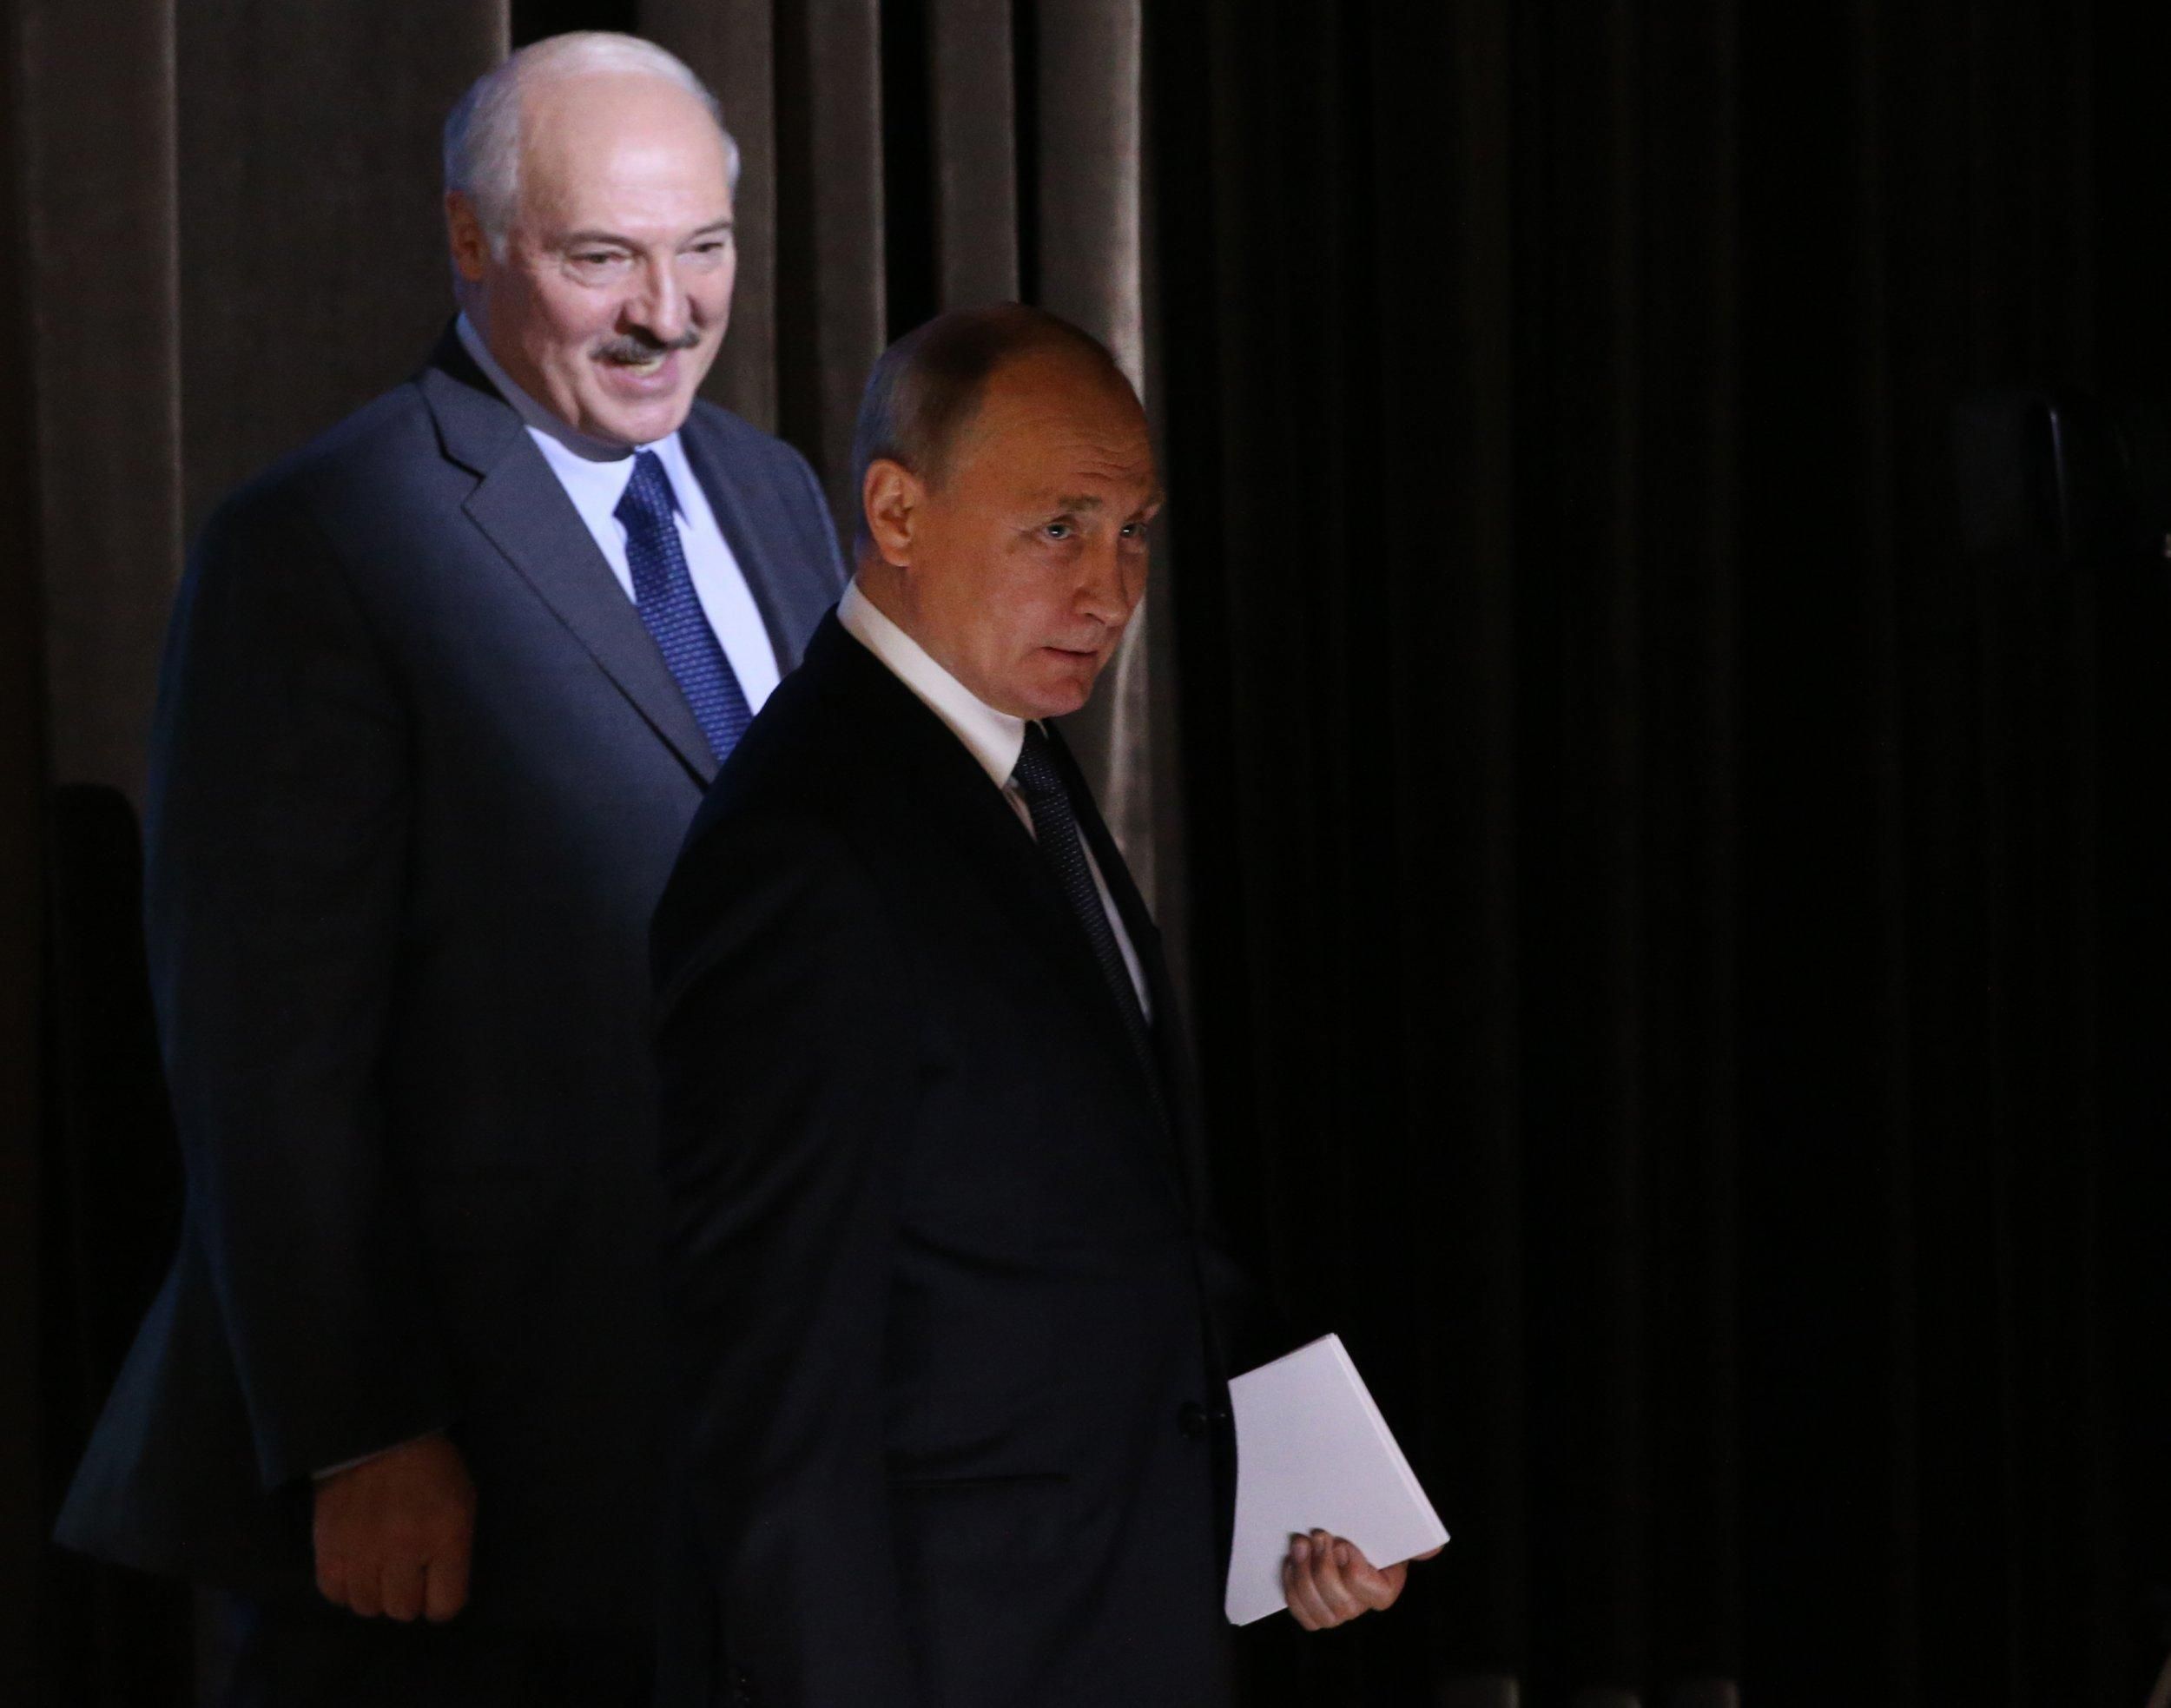 "Війна триватиме максимум 3 – 4 дні": чи готовий Лукашенко напасти на Україну - новини Білорусь - 24 Канал